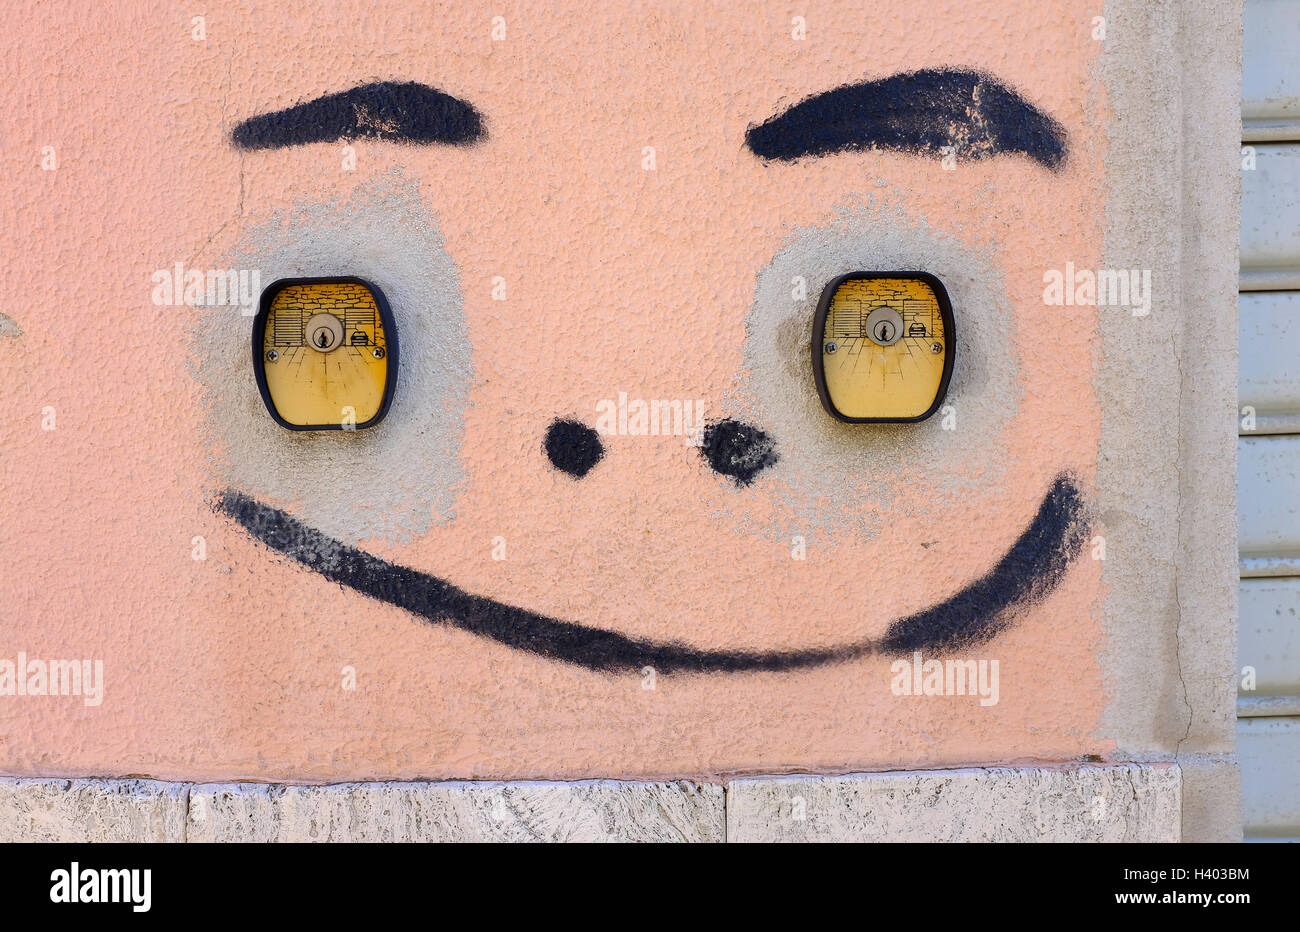 Bemaltes Gesicht auf Garagenwand, nuoro, sardinien, italien Stockfoto